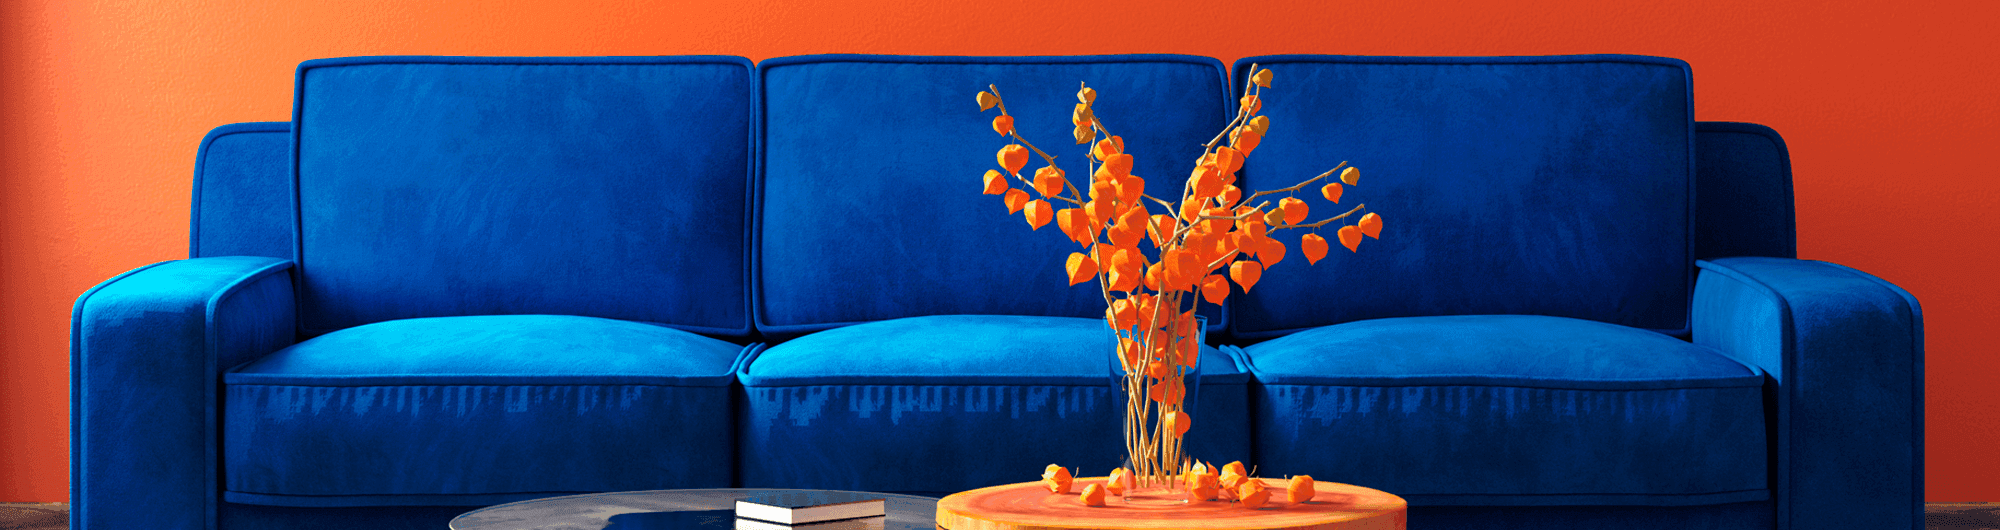 sofá azul em frente parede laranja